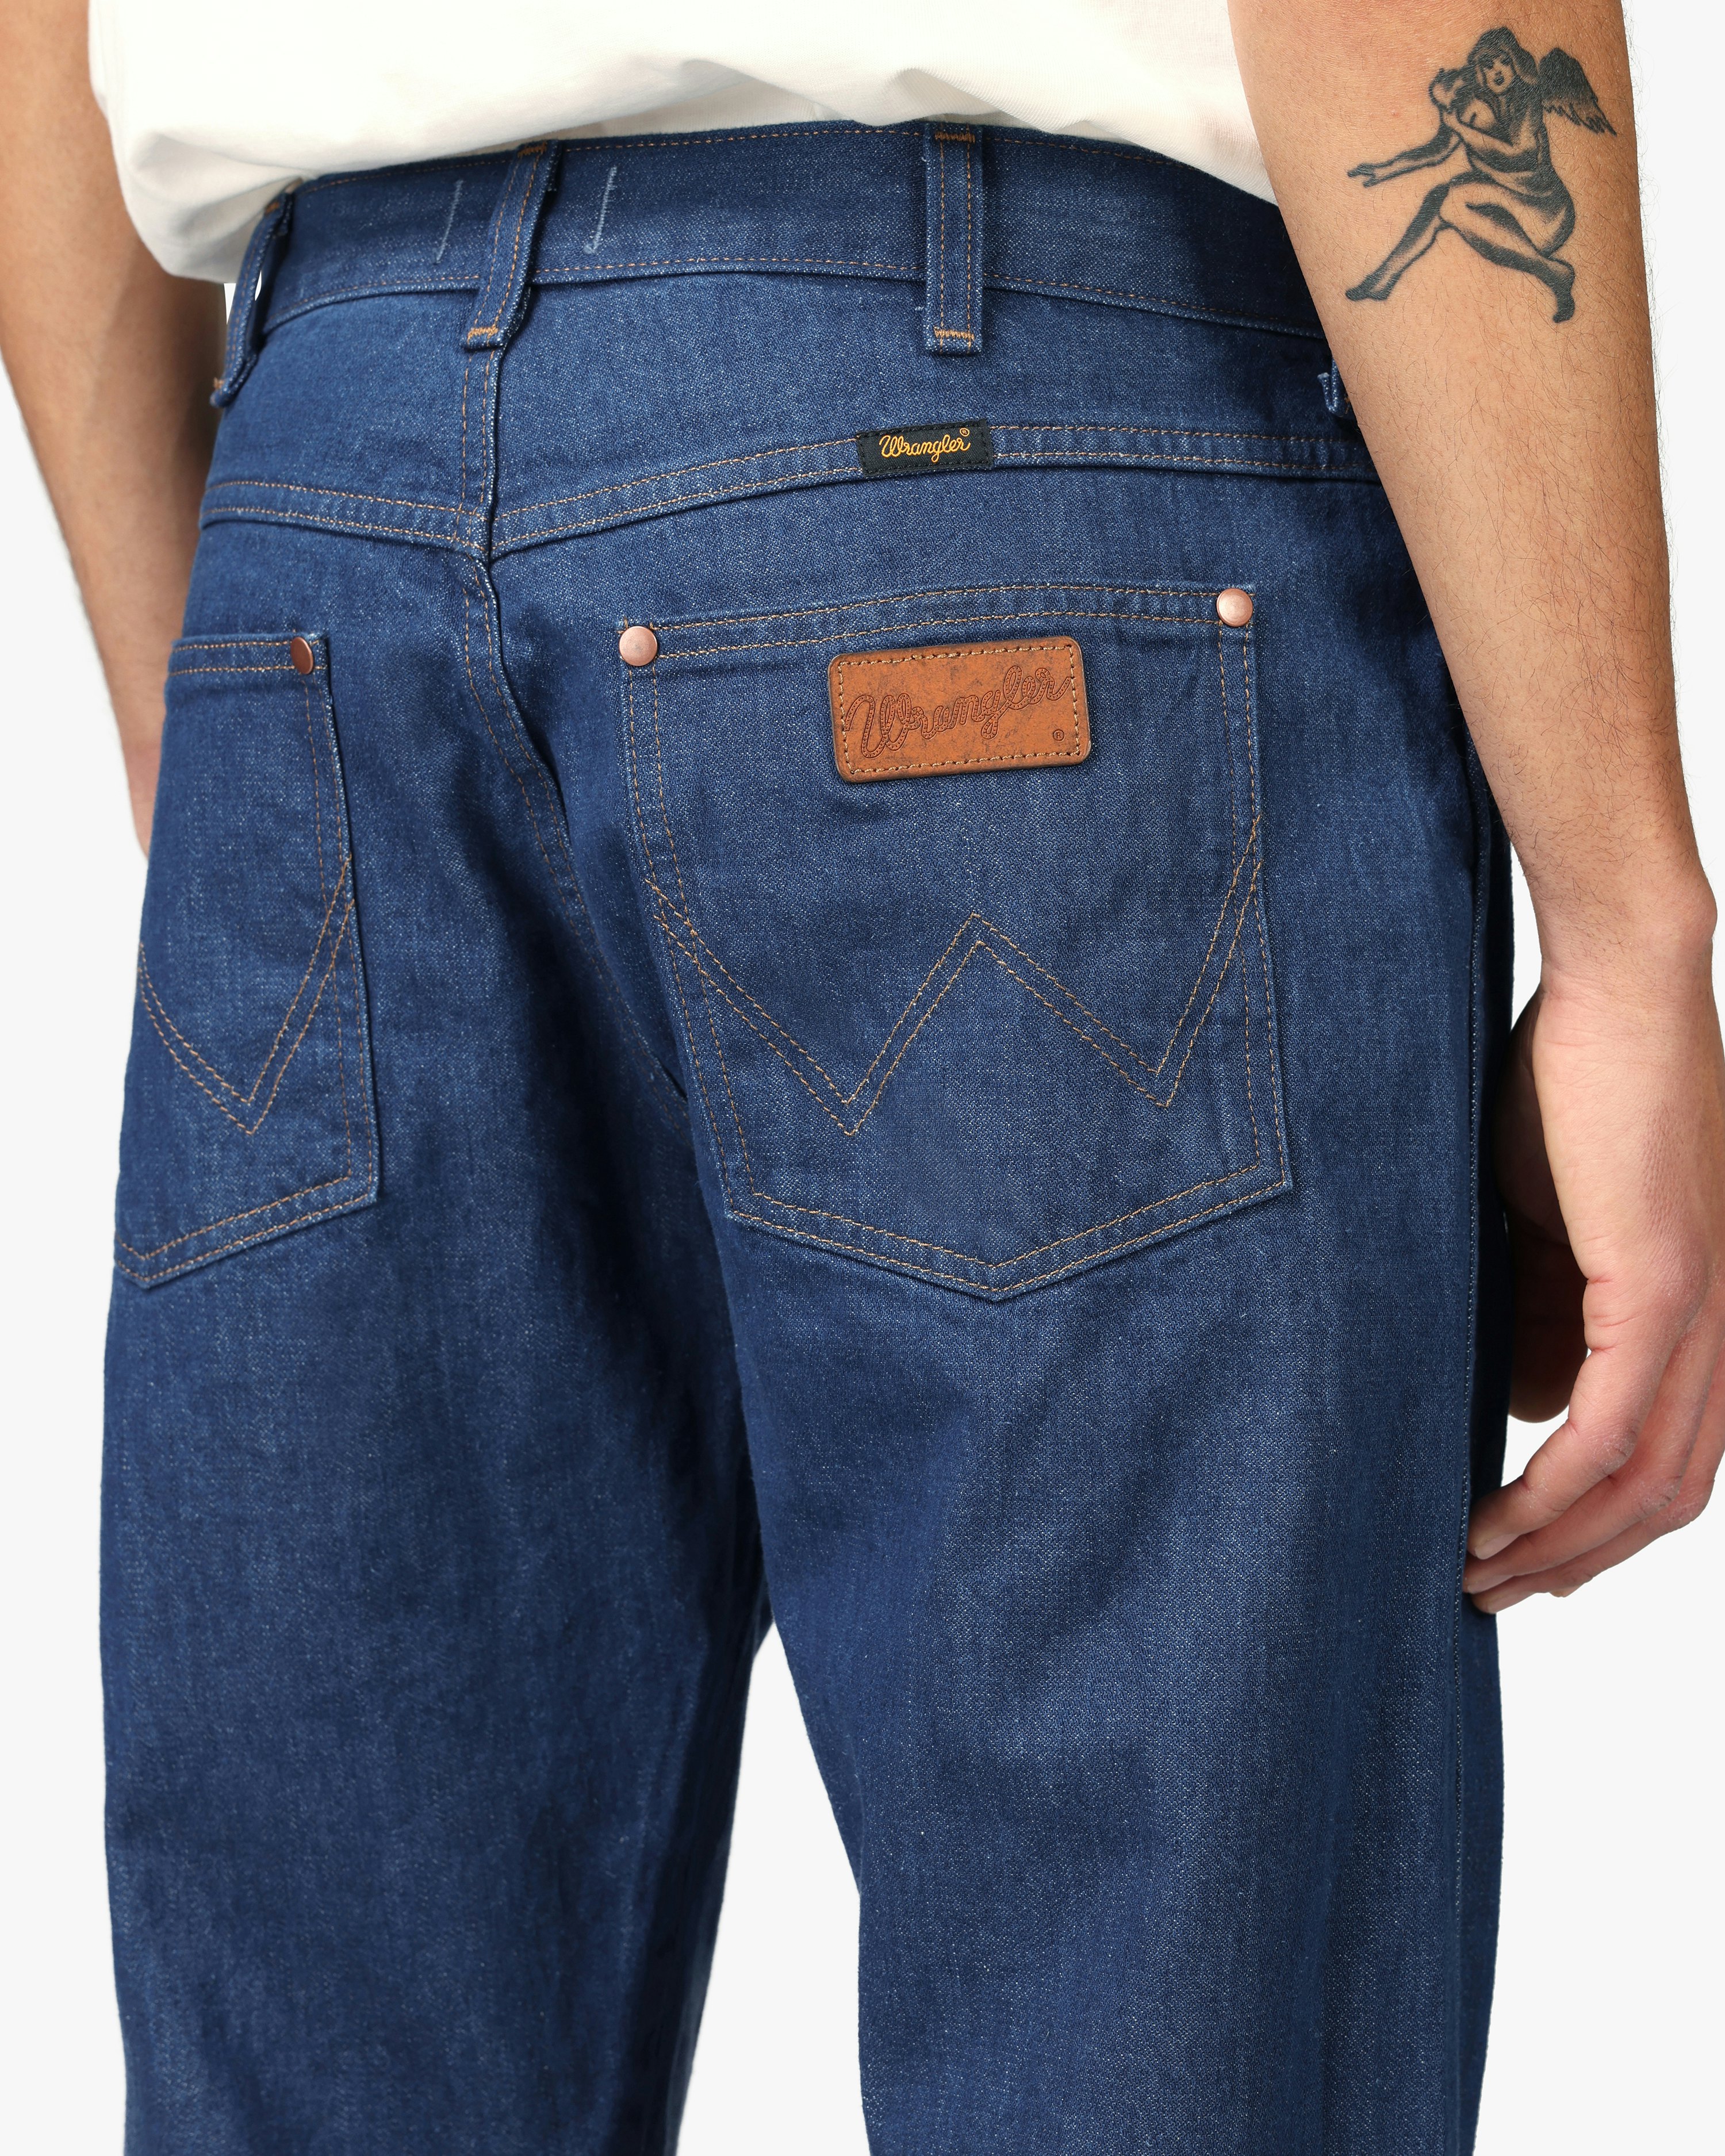 Wrangler GREENSBORO  Straight leg jeans  light blue deminlightblue  denim  Zalandode